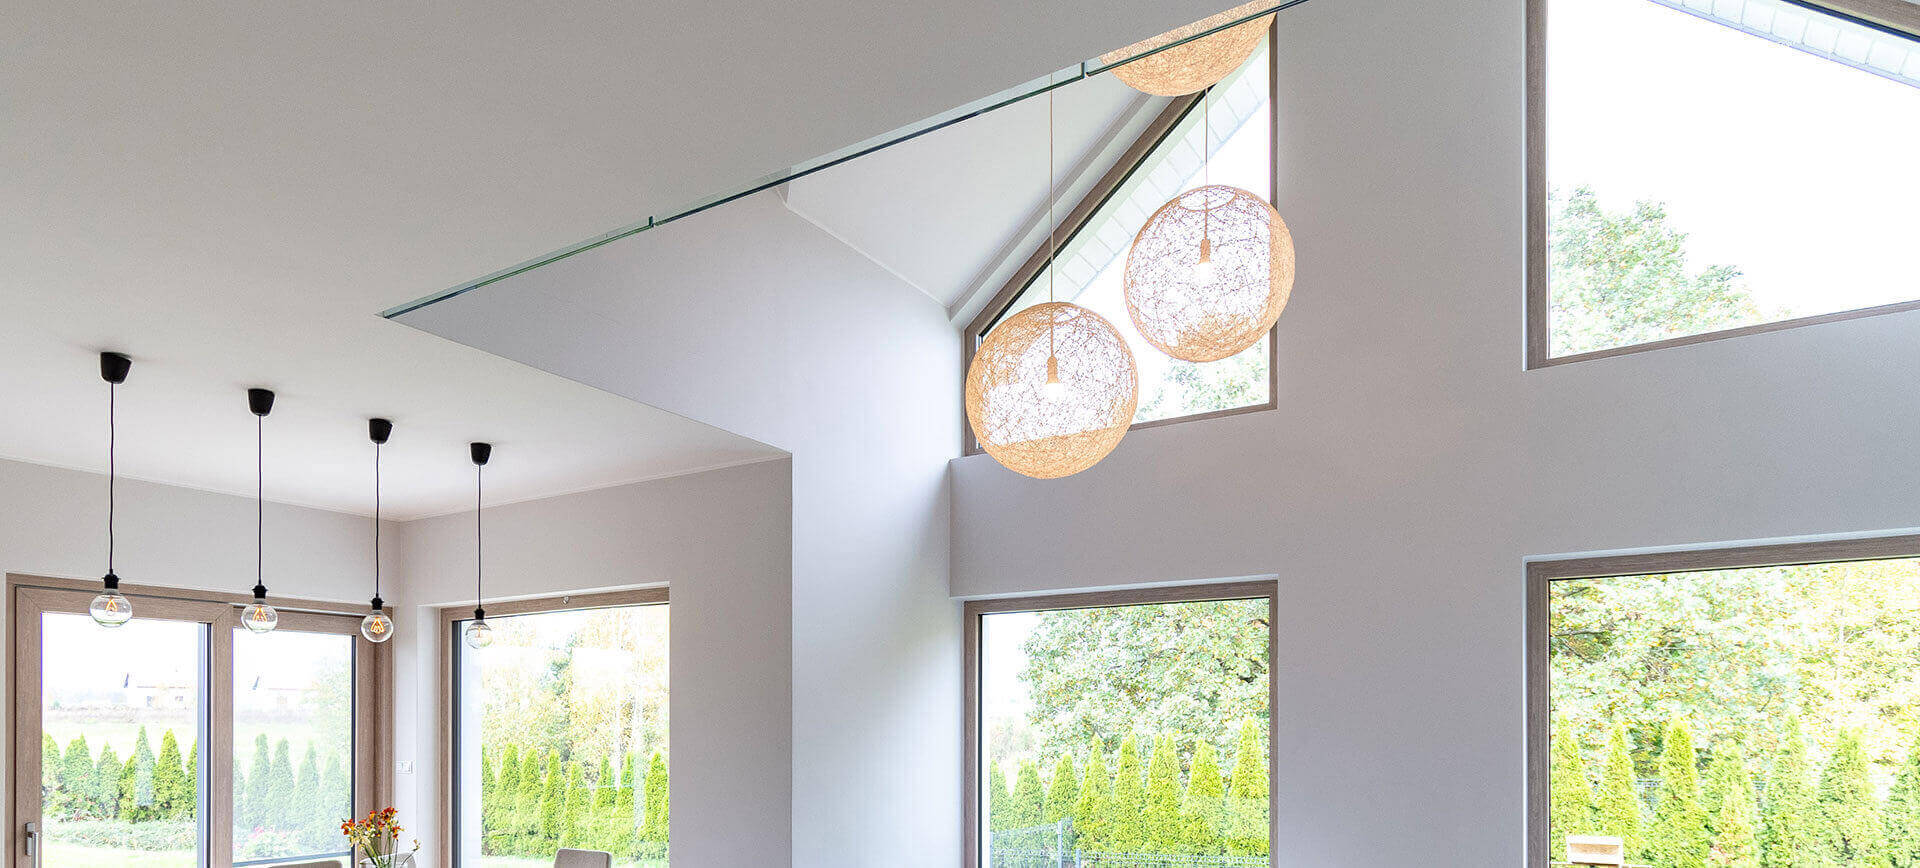 Passive Fenster werden in energieeffizienten Gebäuden eingesetzt.